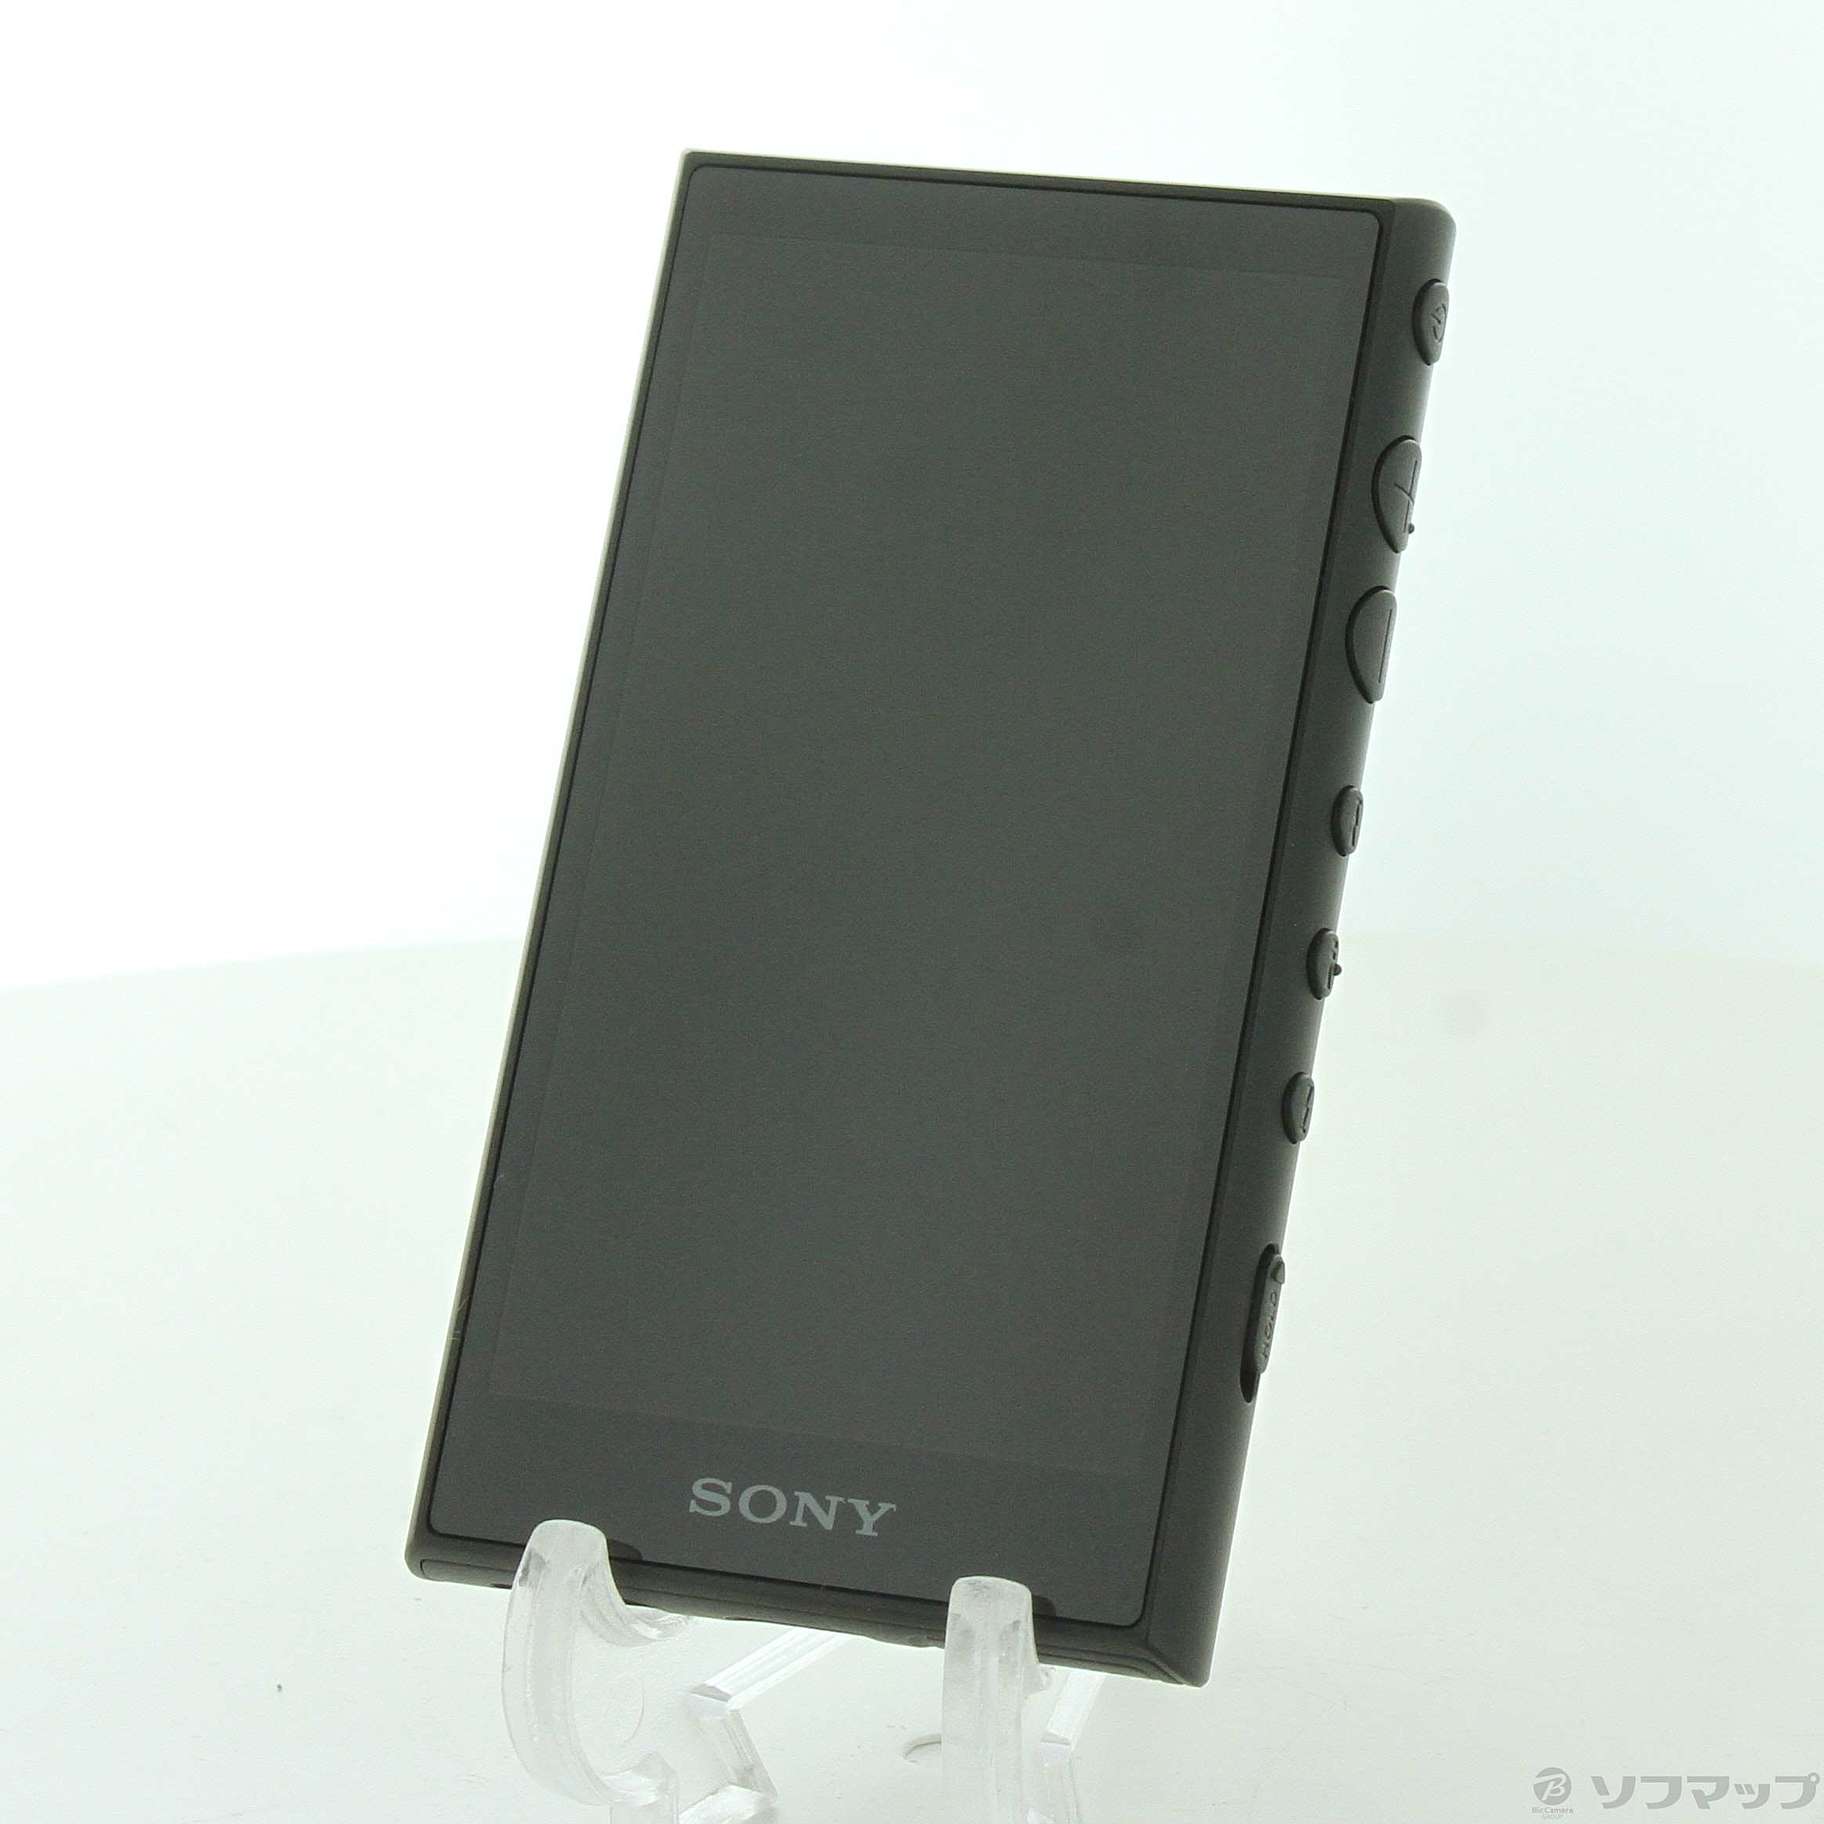 ソニー ウォークマン 32GB Aシリーズ NW-A106 ブラック